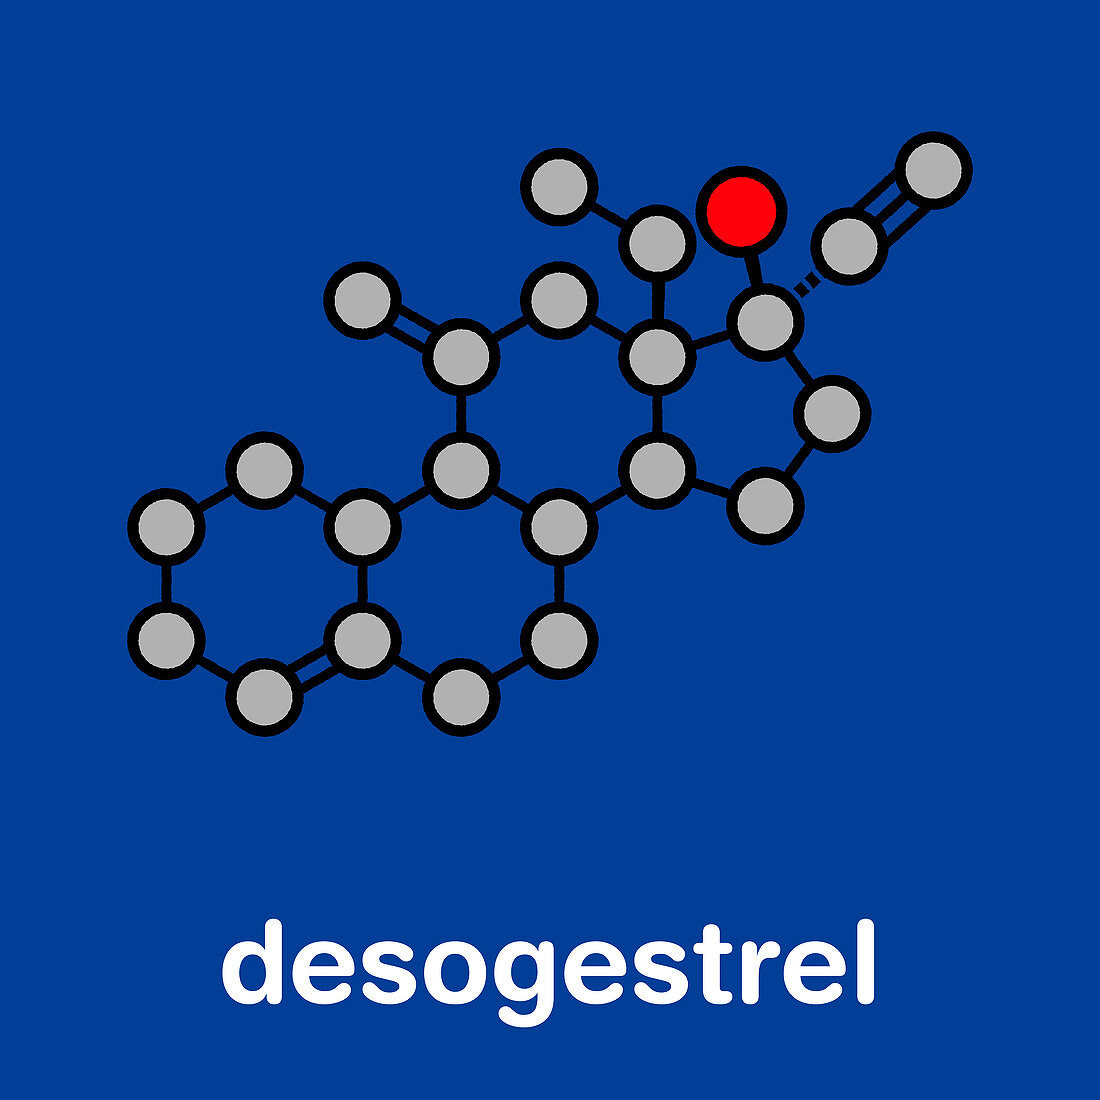 Desogestrel birth control pill drug, molecular model